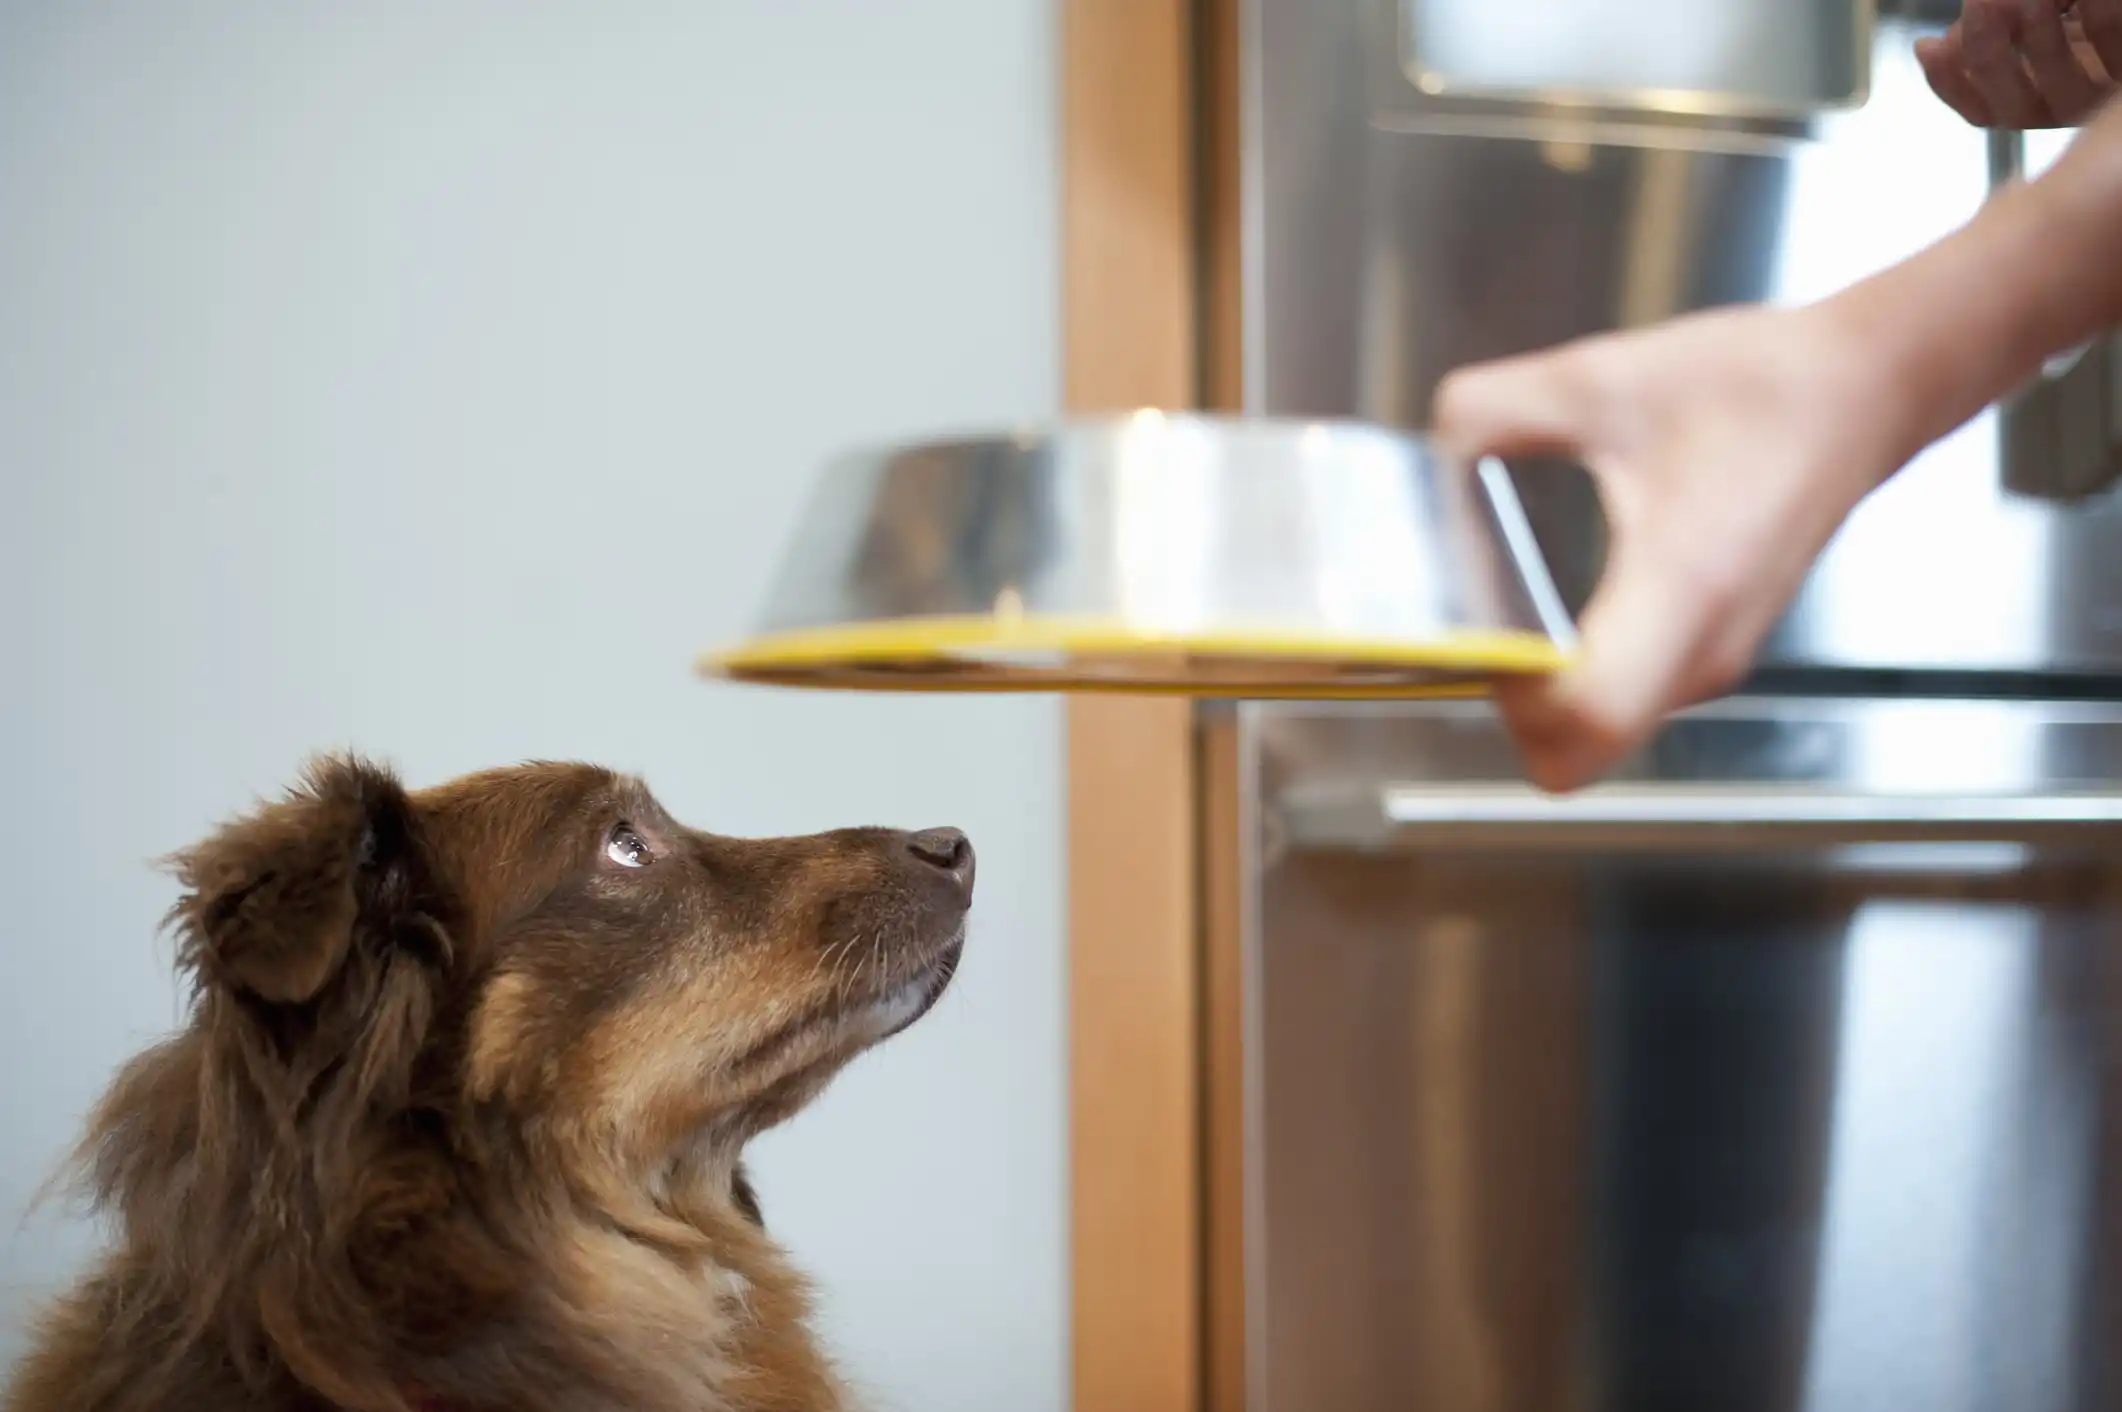 Um cão de pelo marrom olhando fixamente para o tutor que segura uma vasilha inox com borda amarela e fundo desfocado.